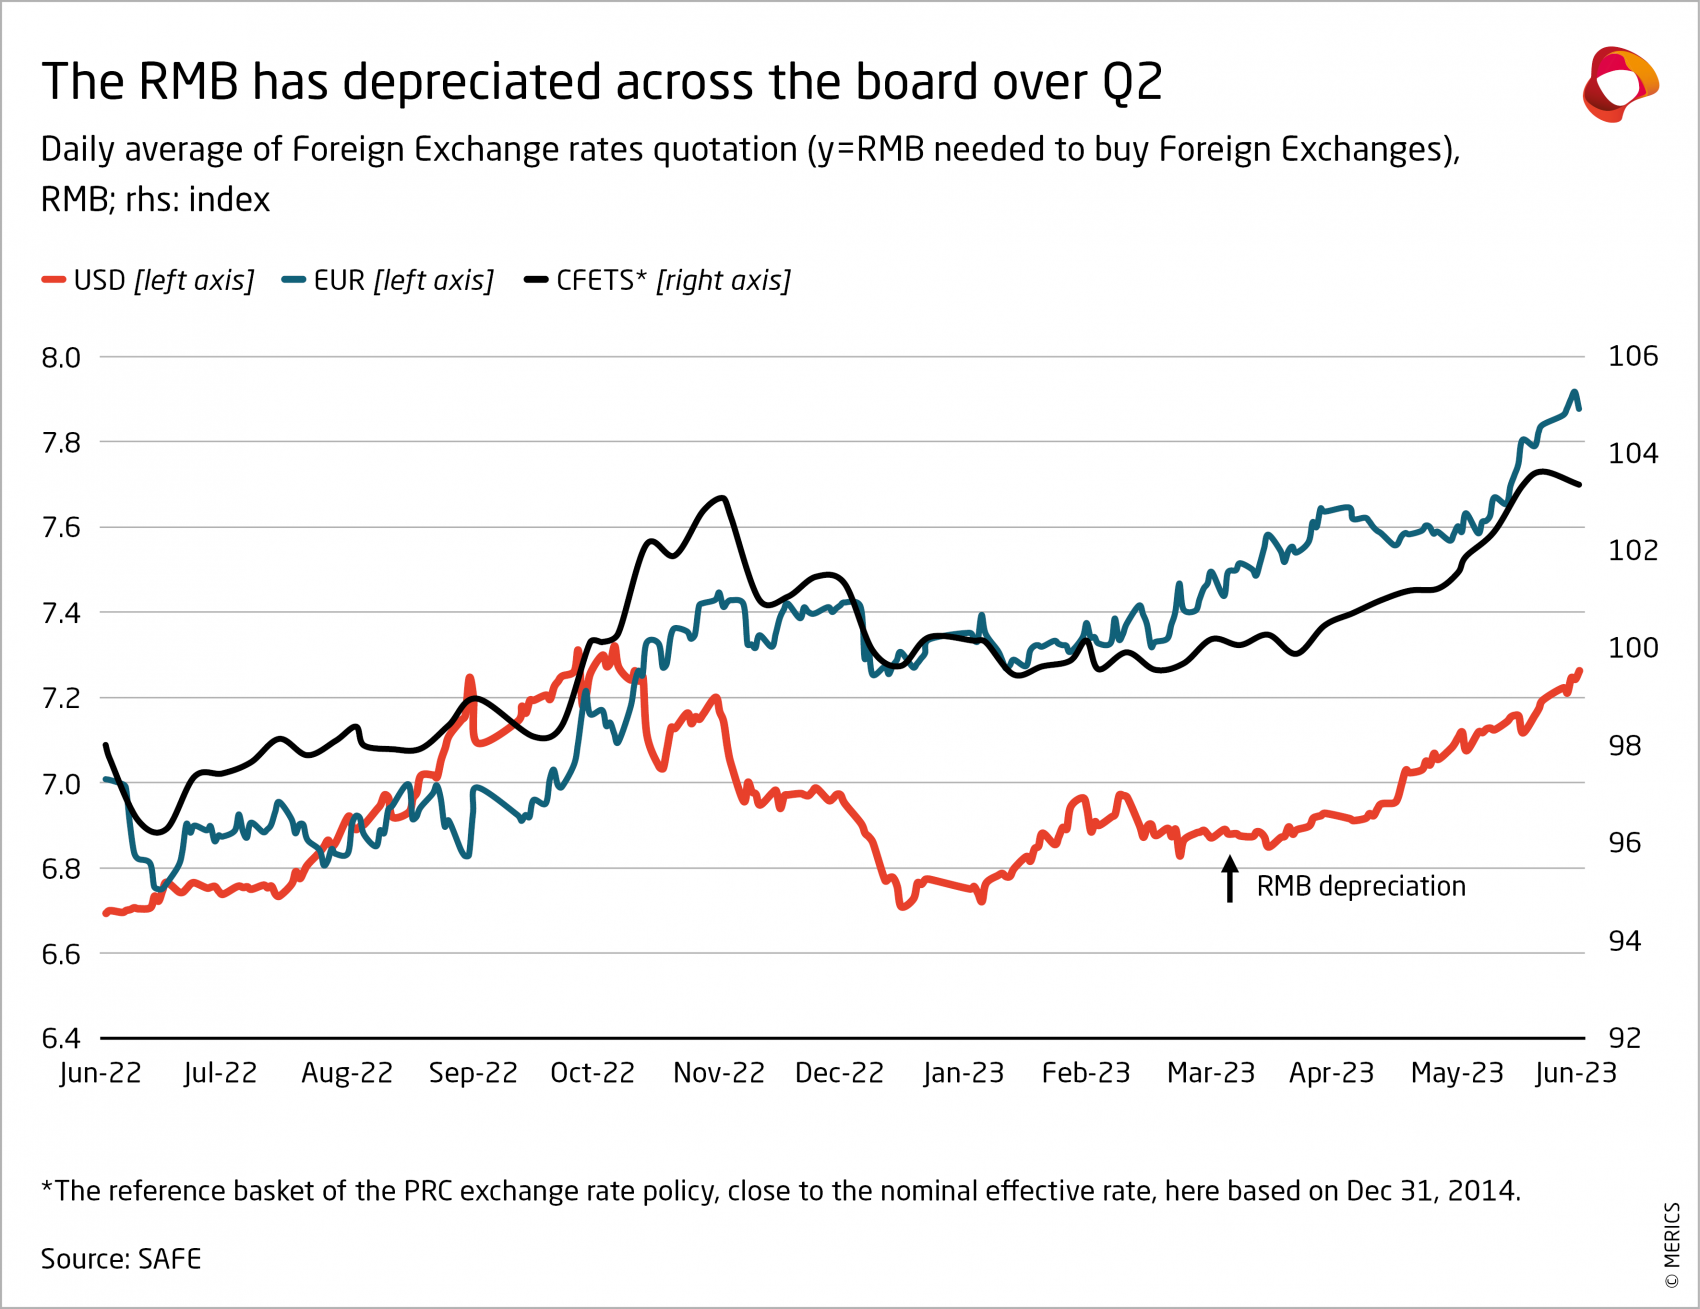 Economic Indicators_Q2-23_The RMB has depreciated across the board over Q2